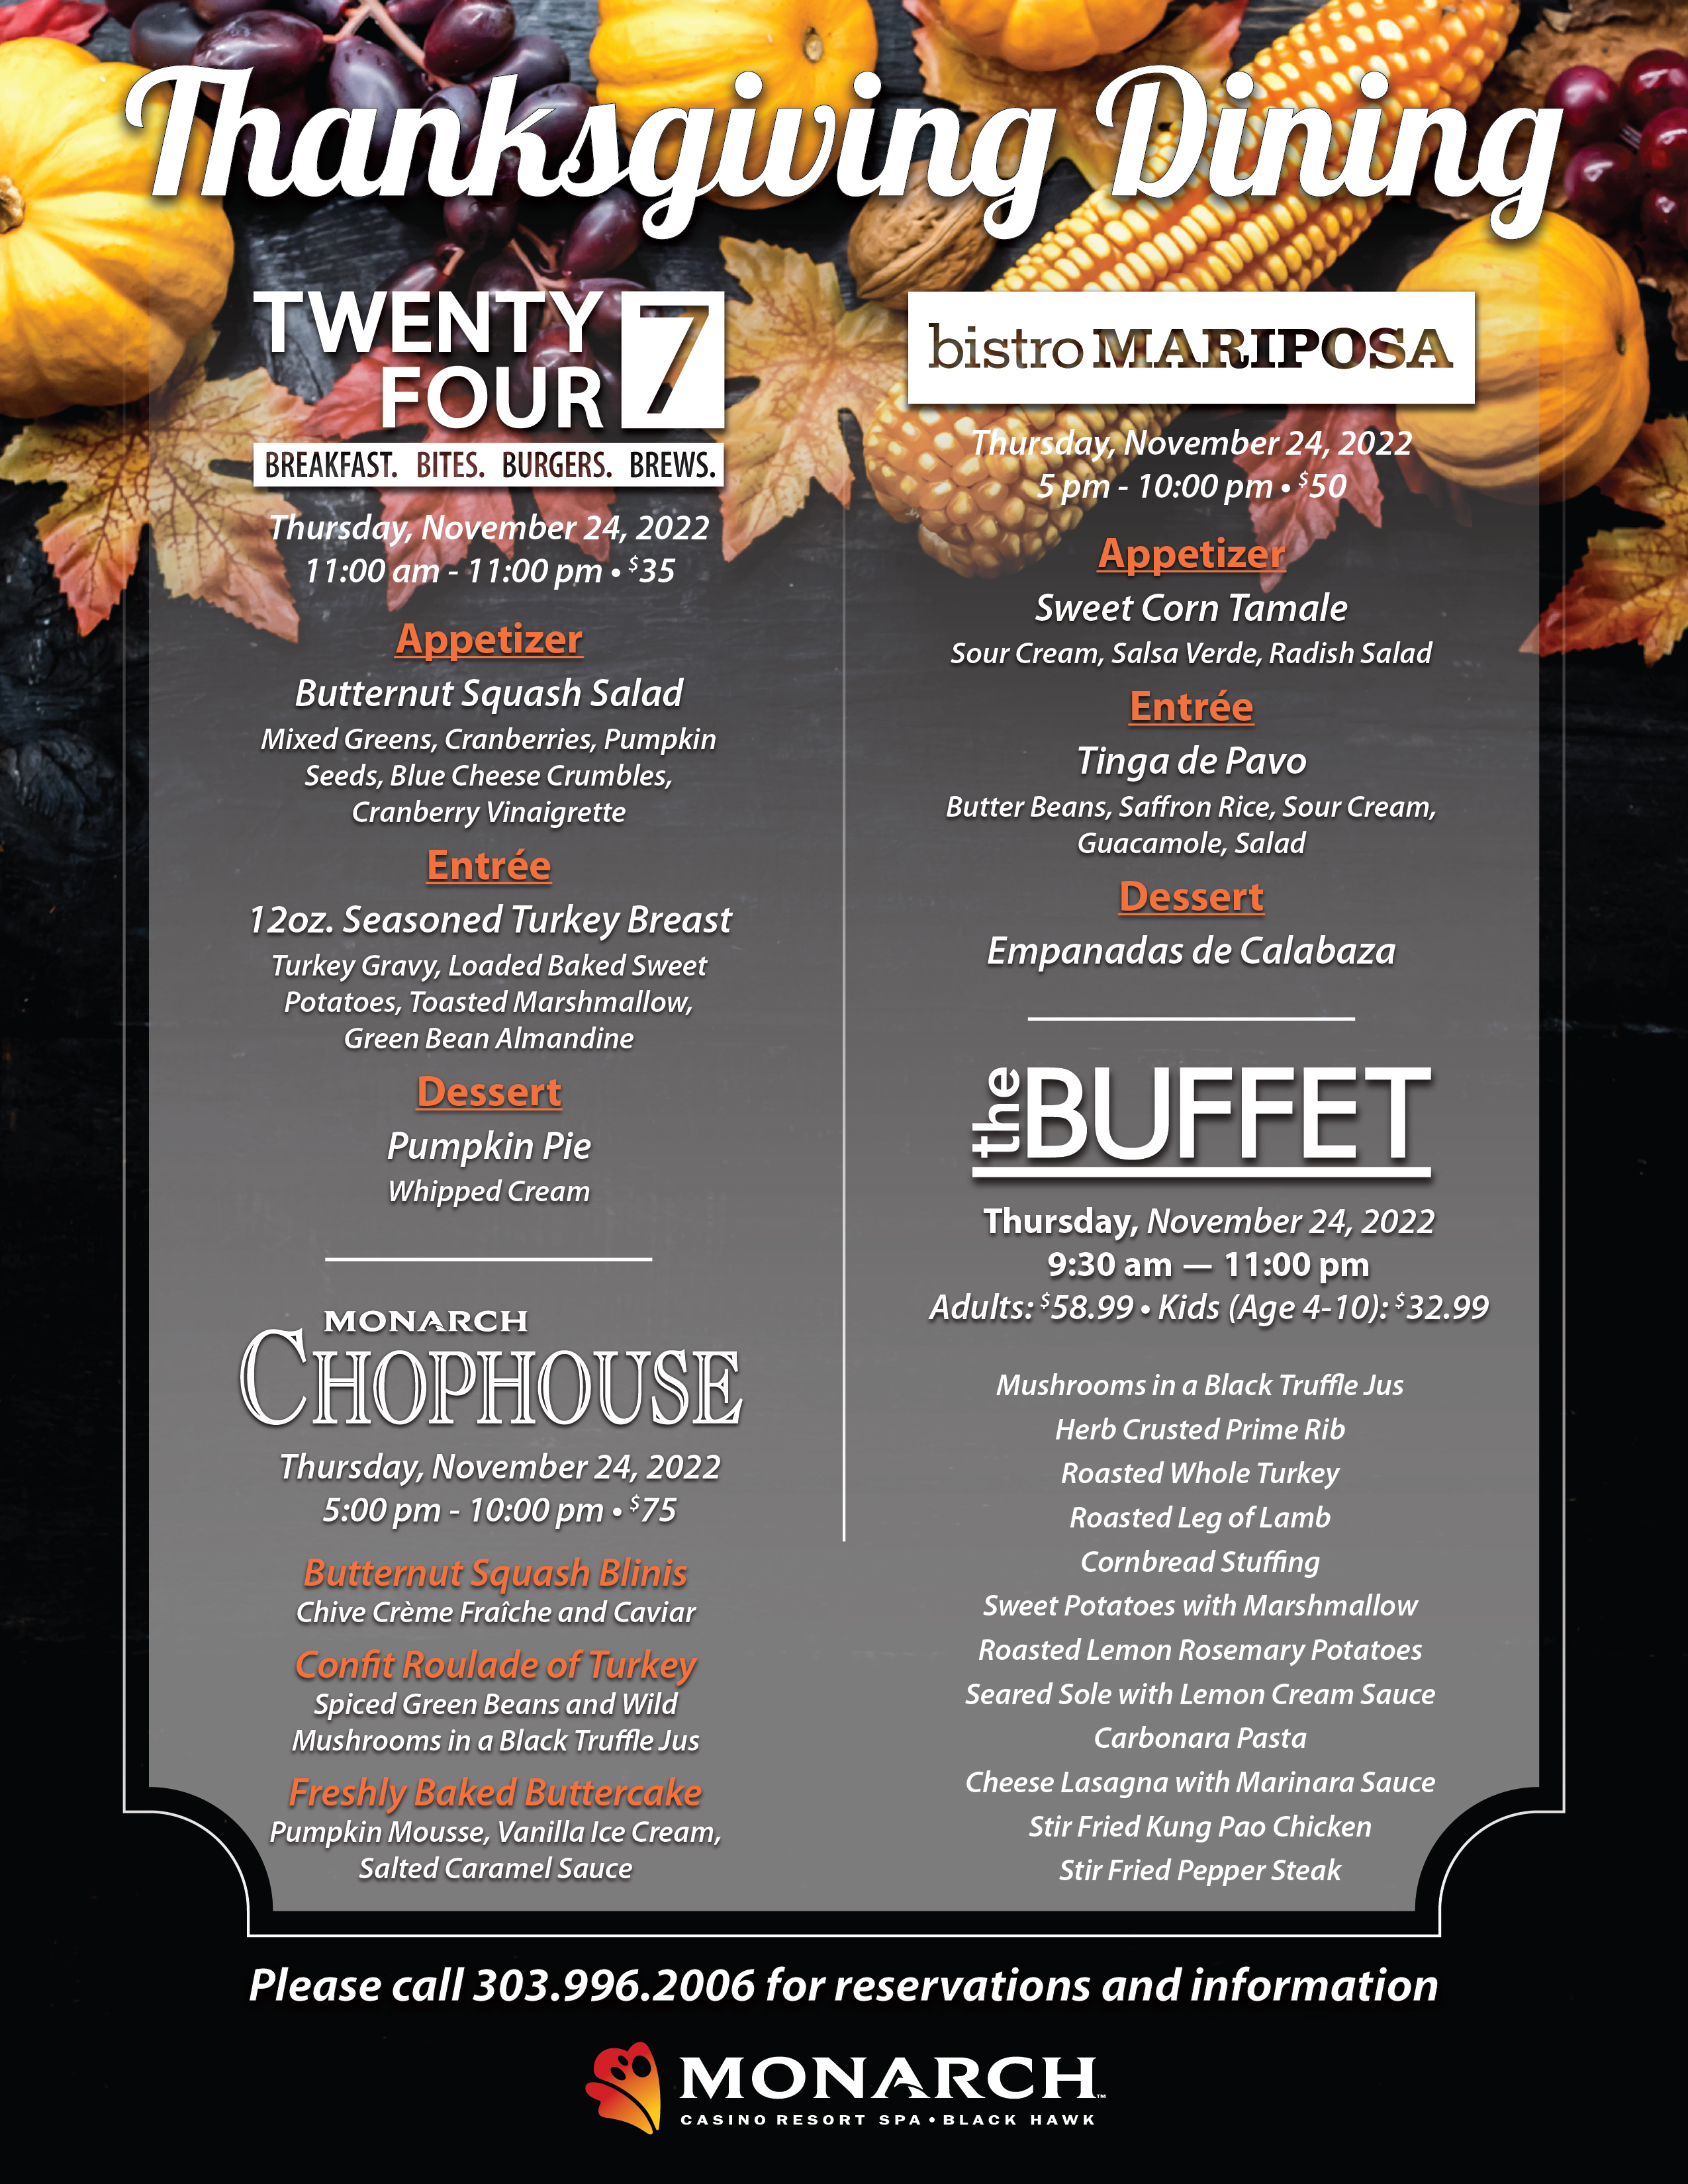 thanksgiving dining menu 2020 monarch casino resort spa black hawk